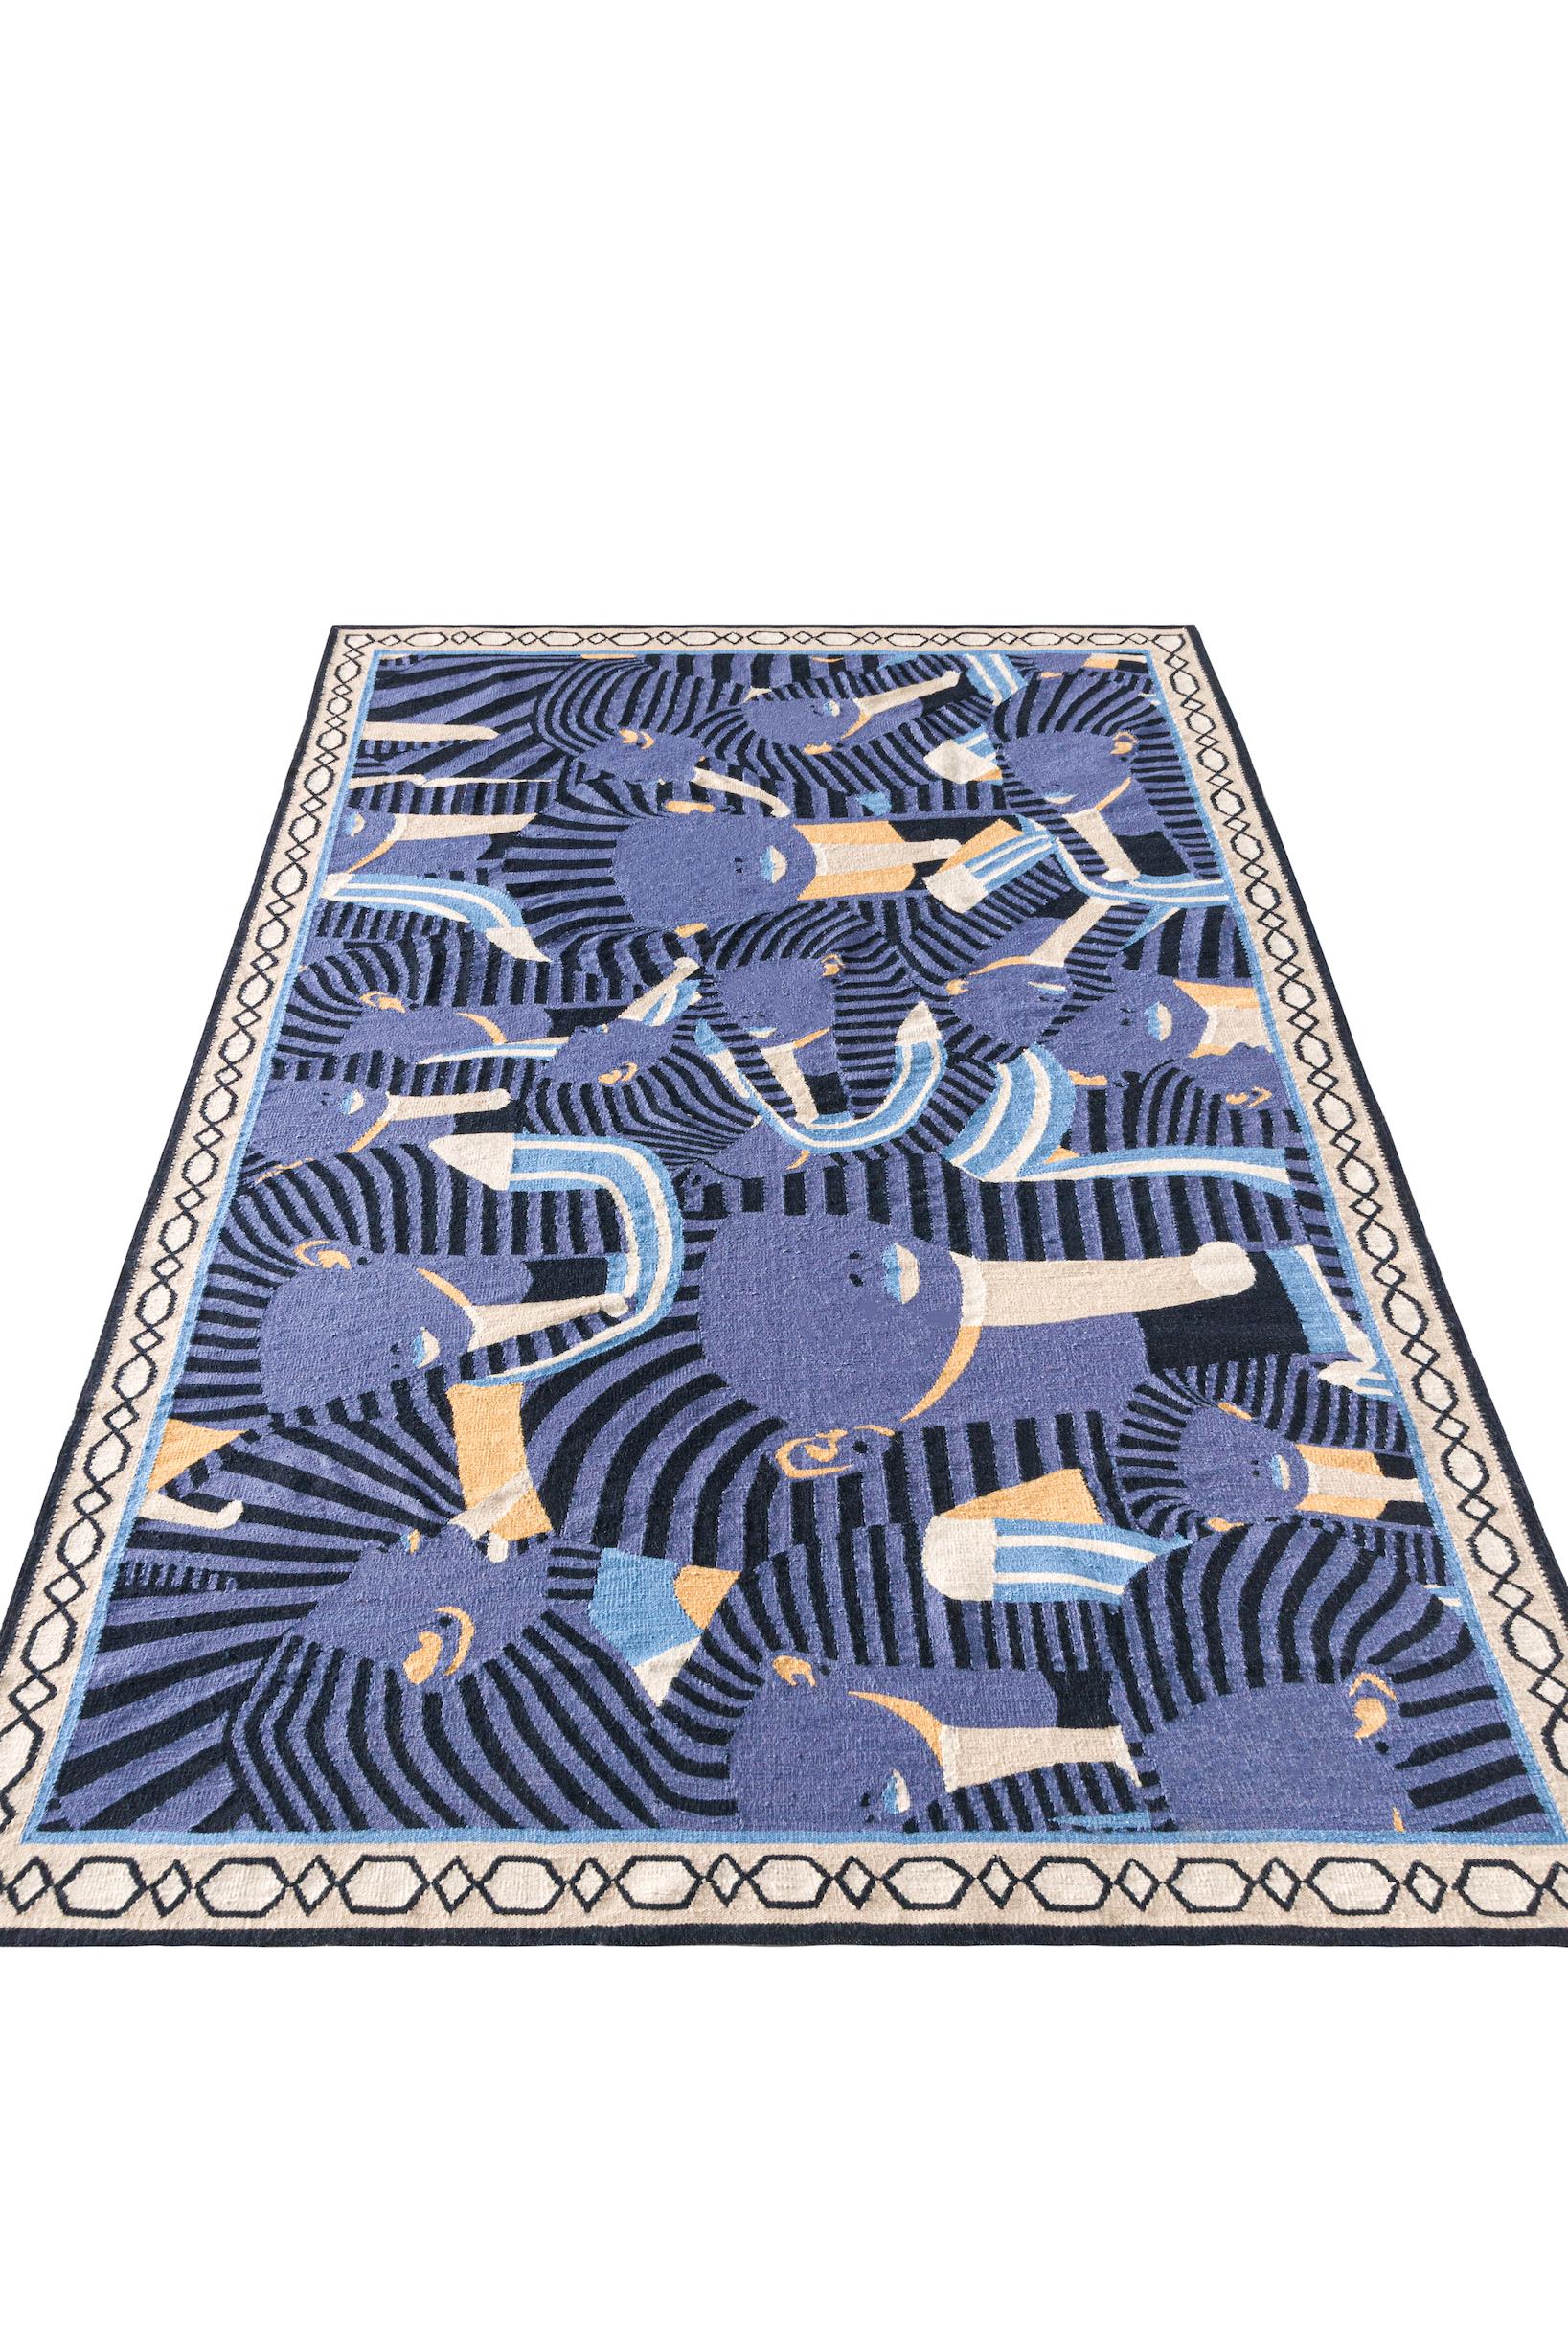 A propos de la tapisserie :
Cette tapisserie est un tapis tissé à plat qui comporte 6 points par 1 cm. Il est fabriqué avec 100 % de laine néo-zélandaise pour le fil de face et...
100% coton égyptien pour la chaîne. La hauteur des poils est